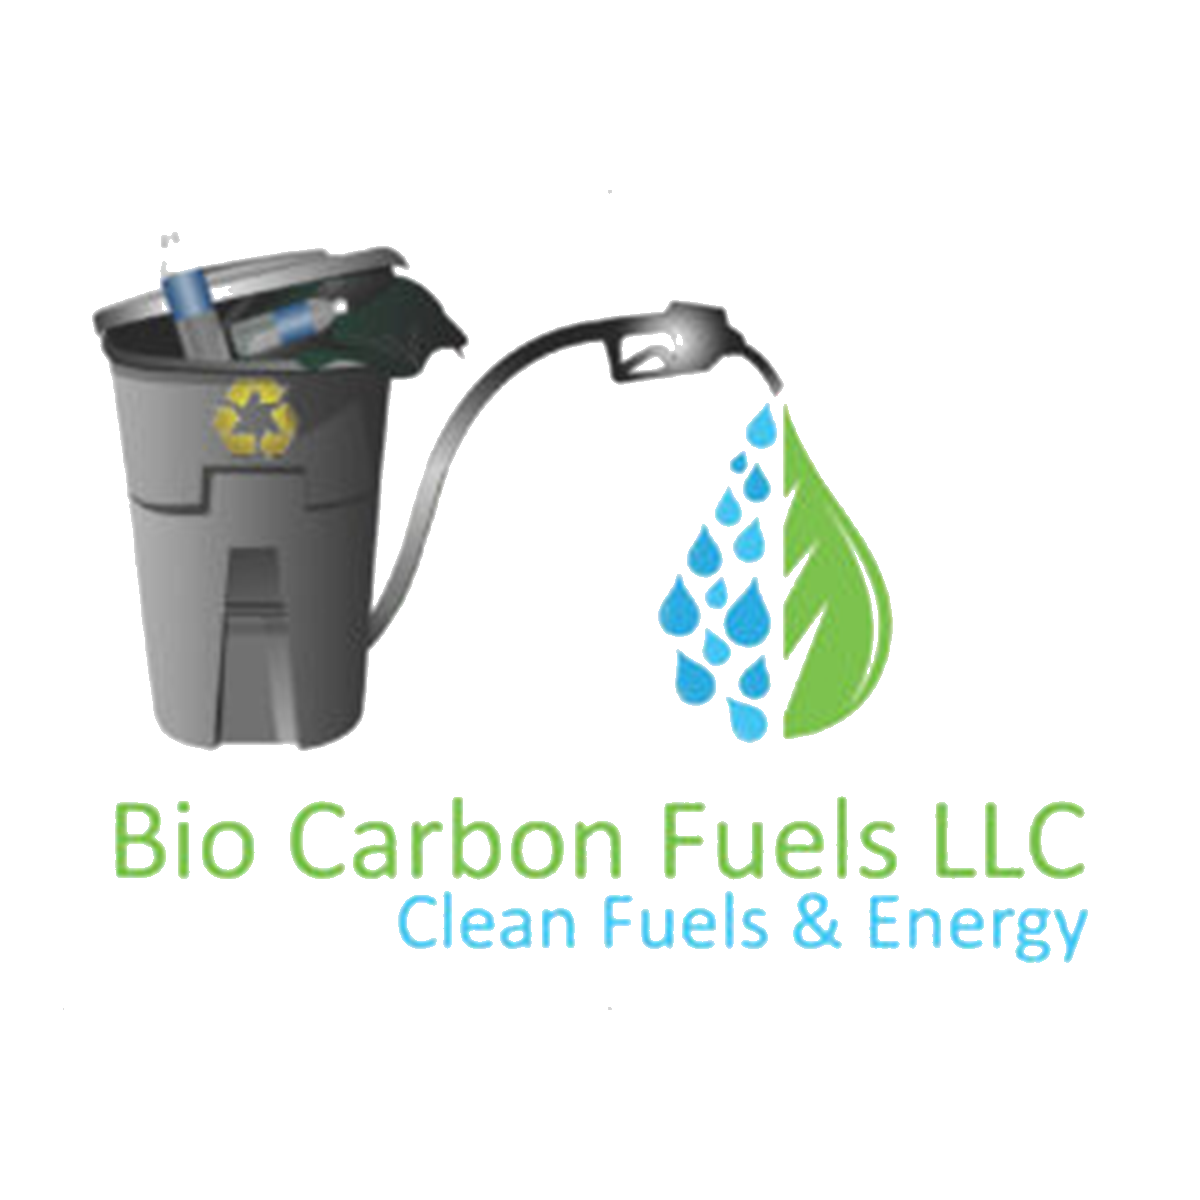 BioCarbon Fuels